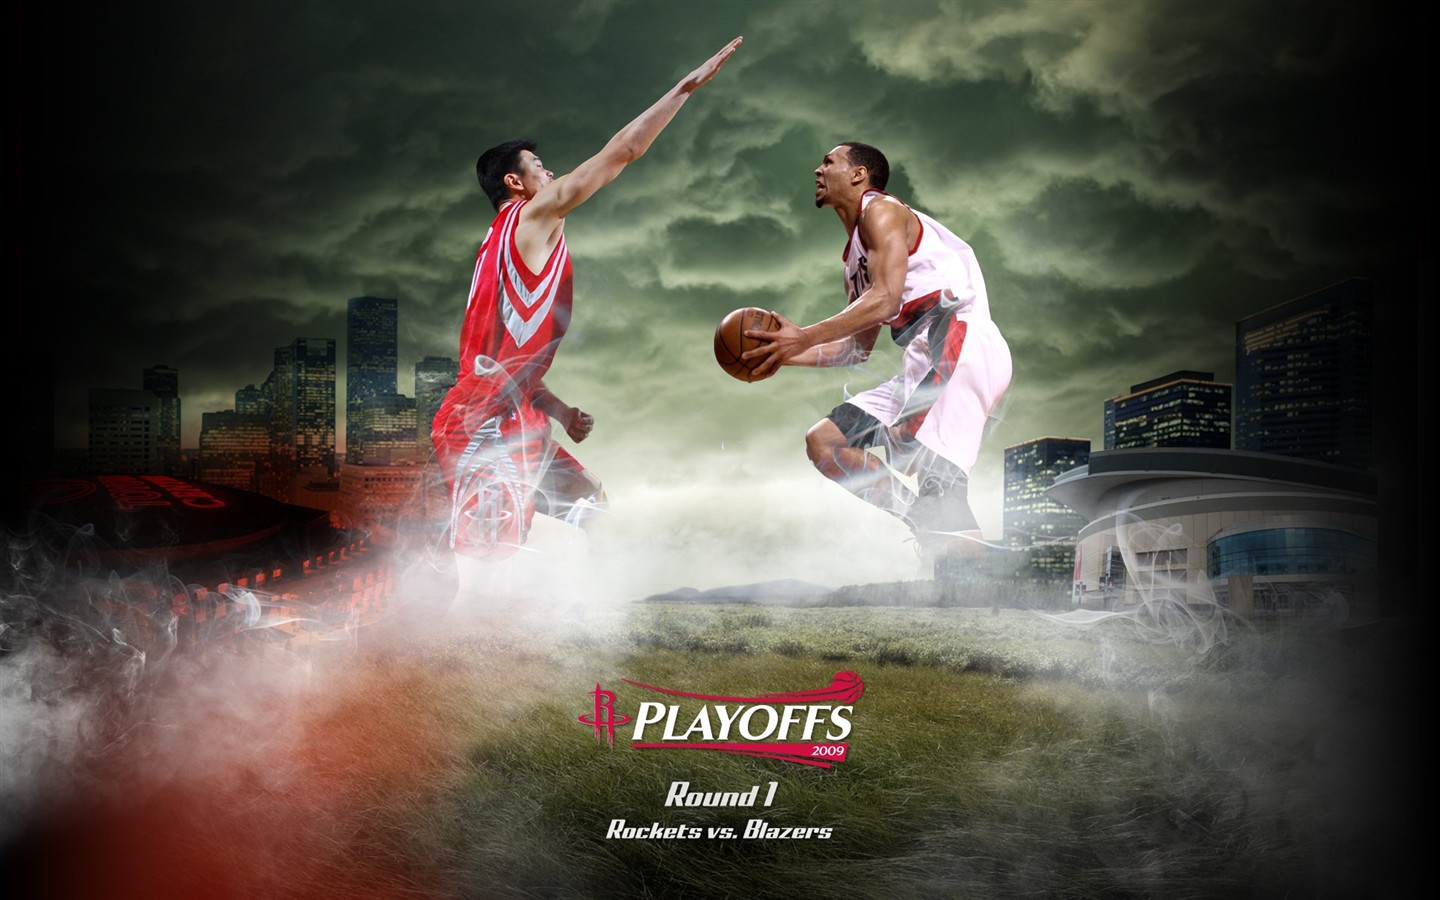 NBA Houston Rockets 2009 fondos de escritorio de los playoffs #1 - 1440x900